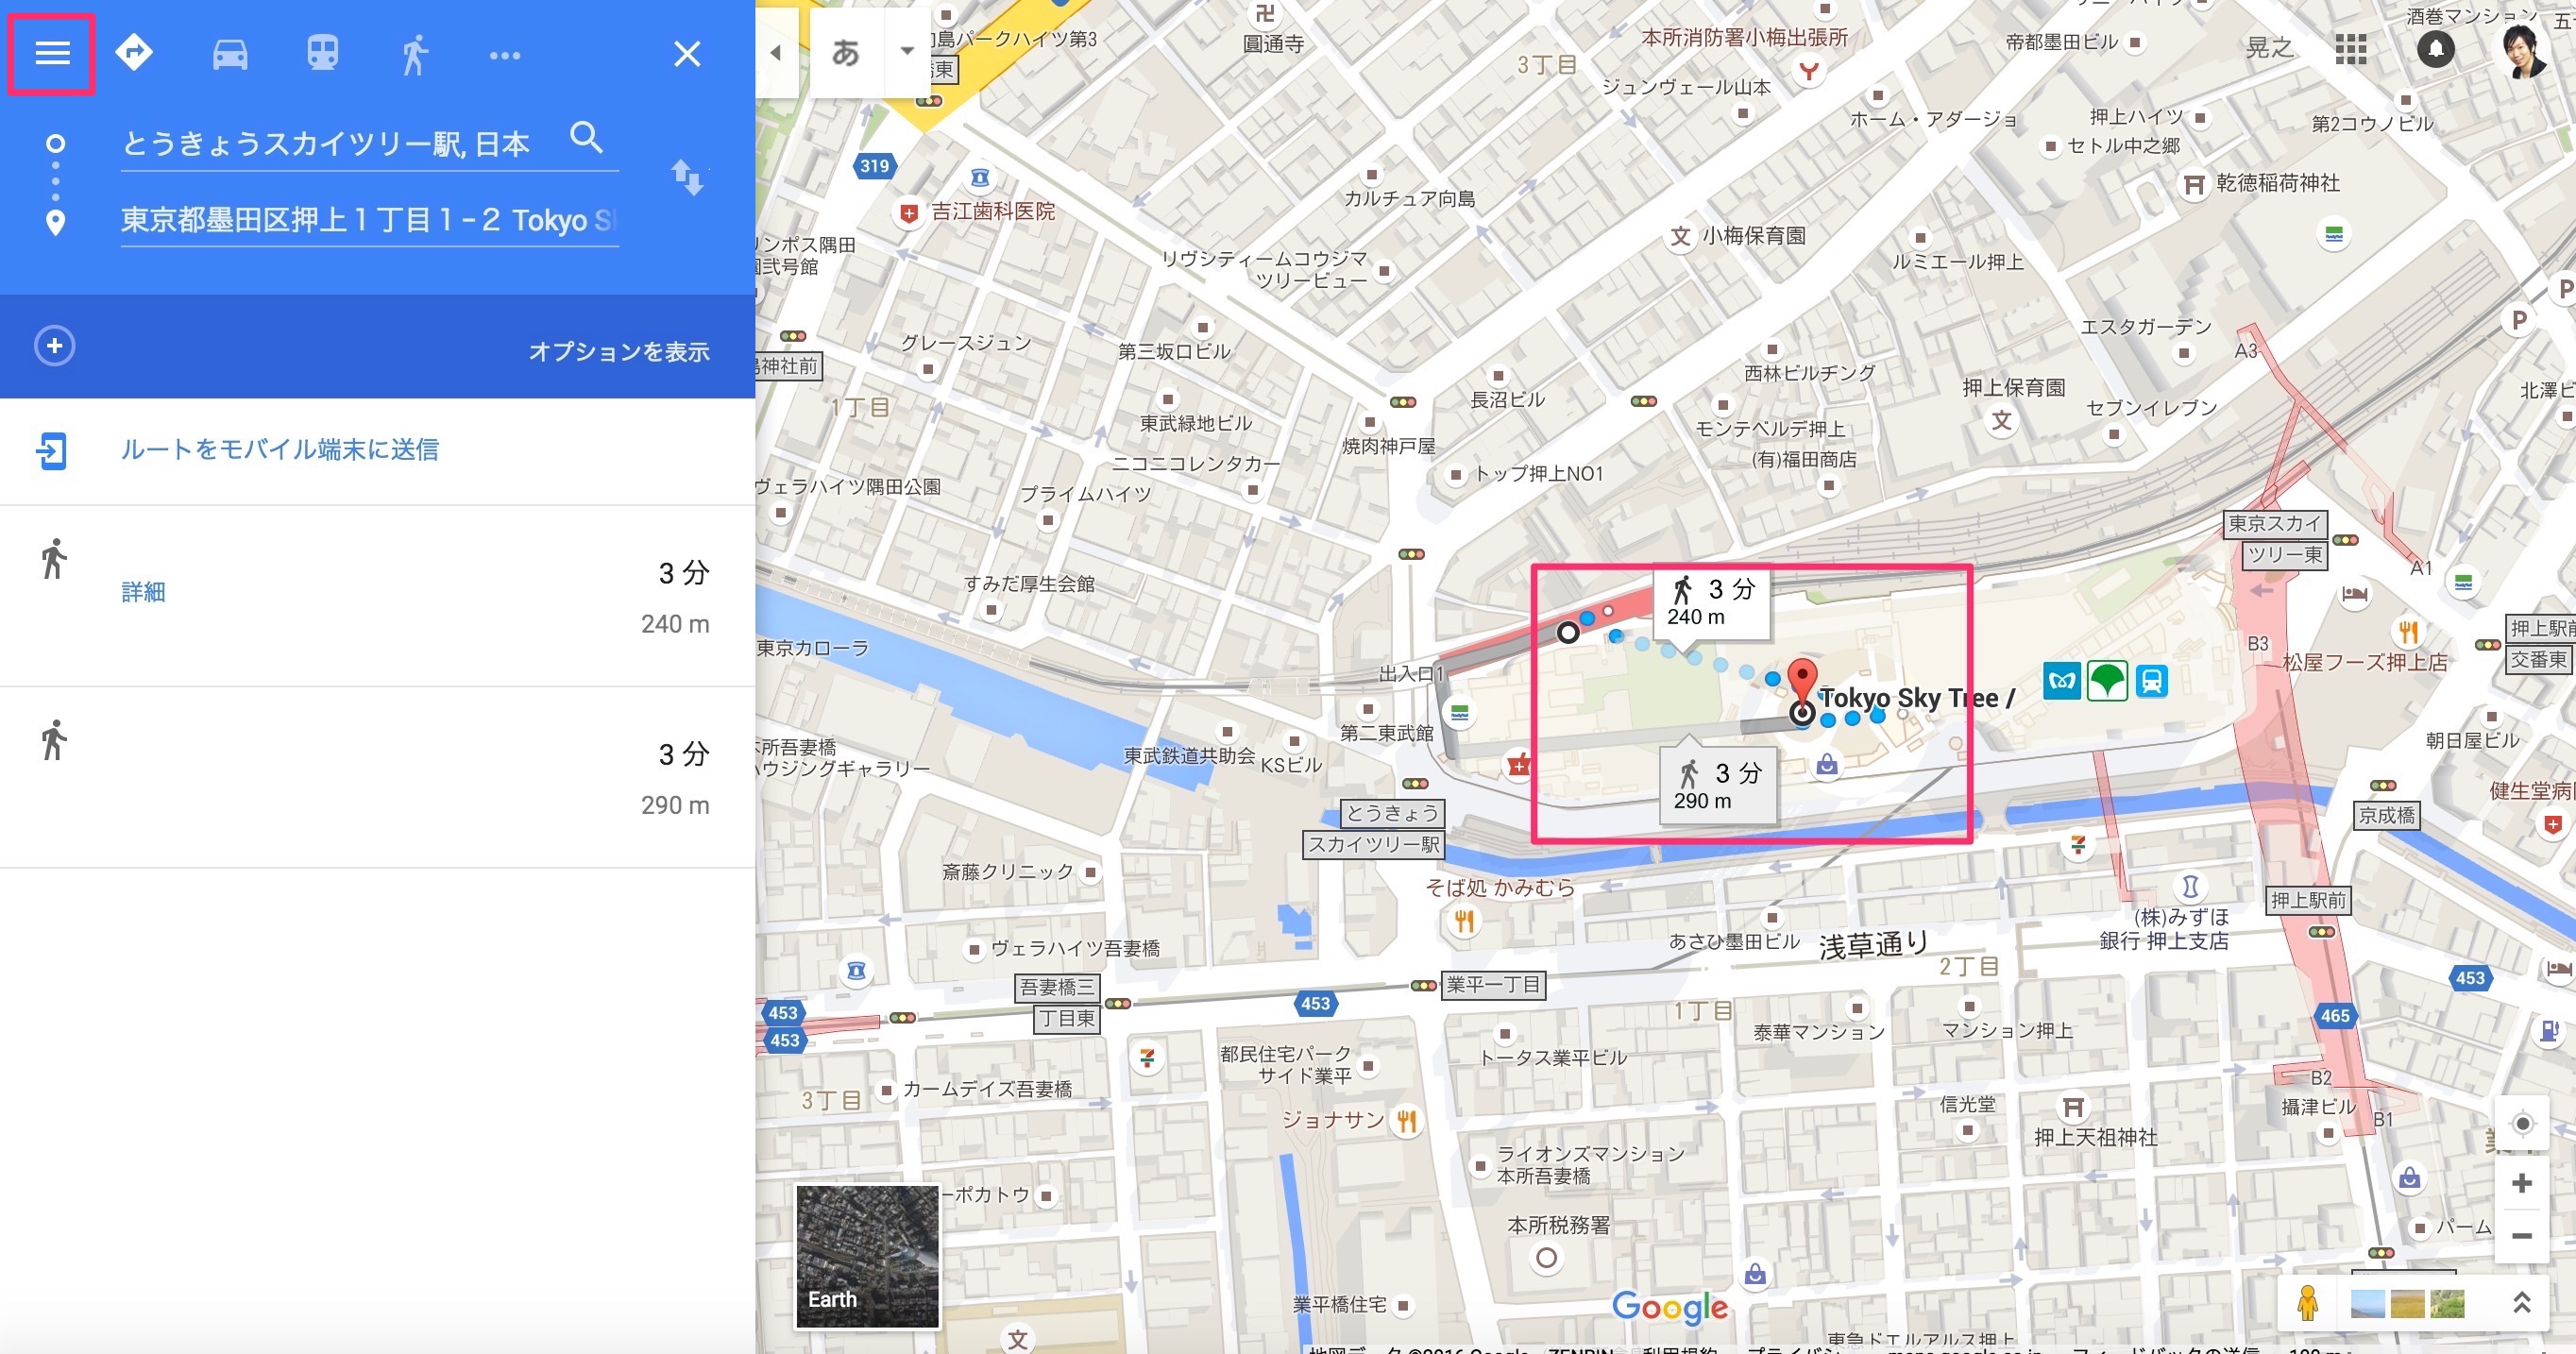 googlemap 埋め込み方法9